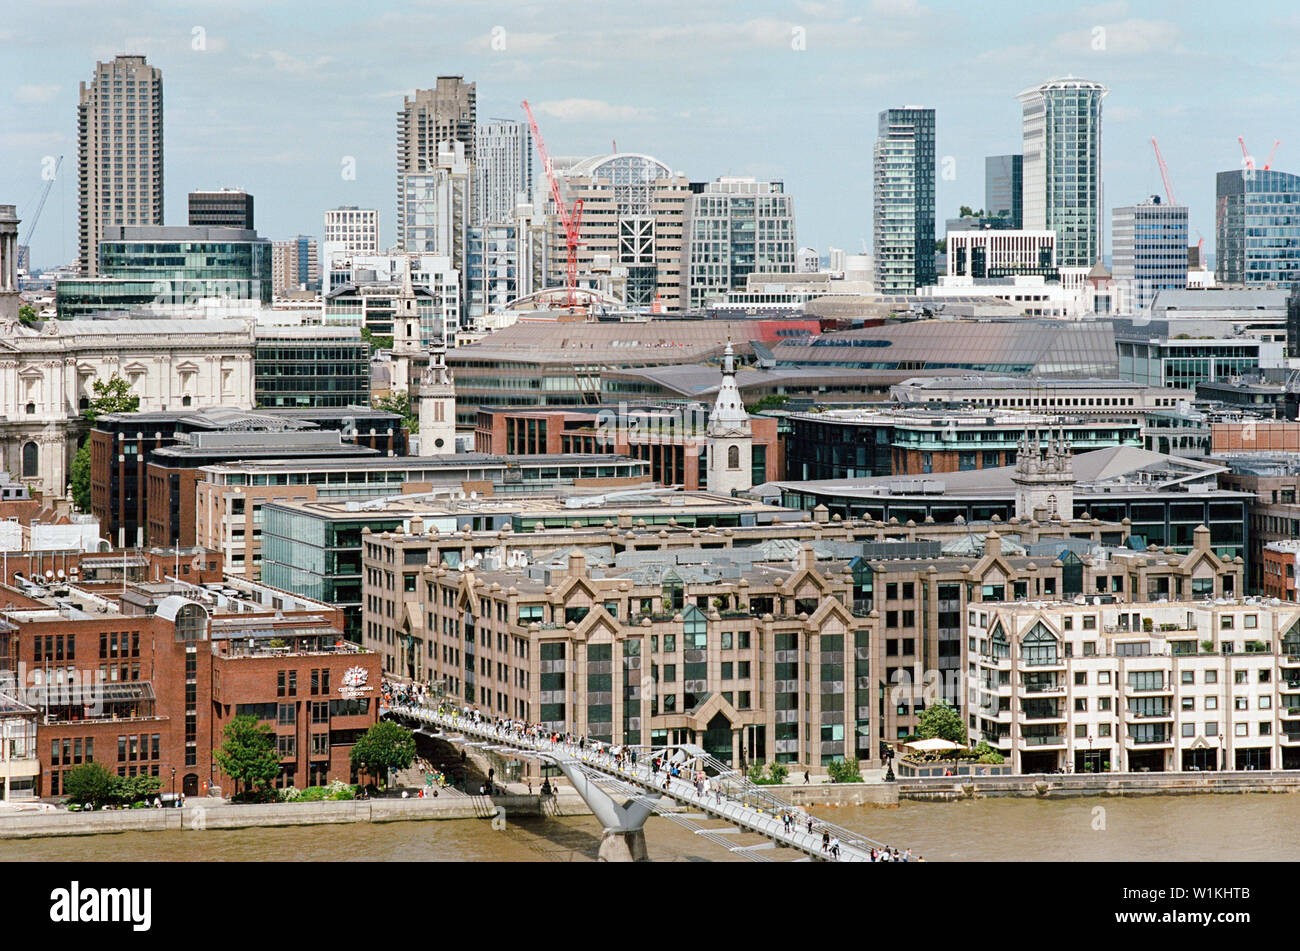 Ville de London et le Barbican vue depuis le dernier étage de la Tate Modern, avec des gens qui marchent sur le pont du millénaire Banque D'Images